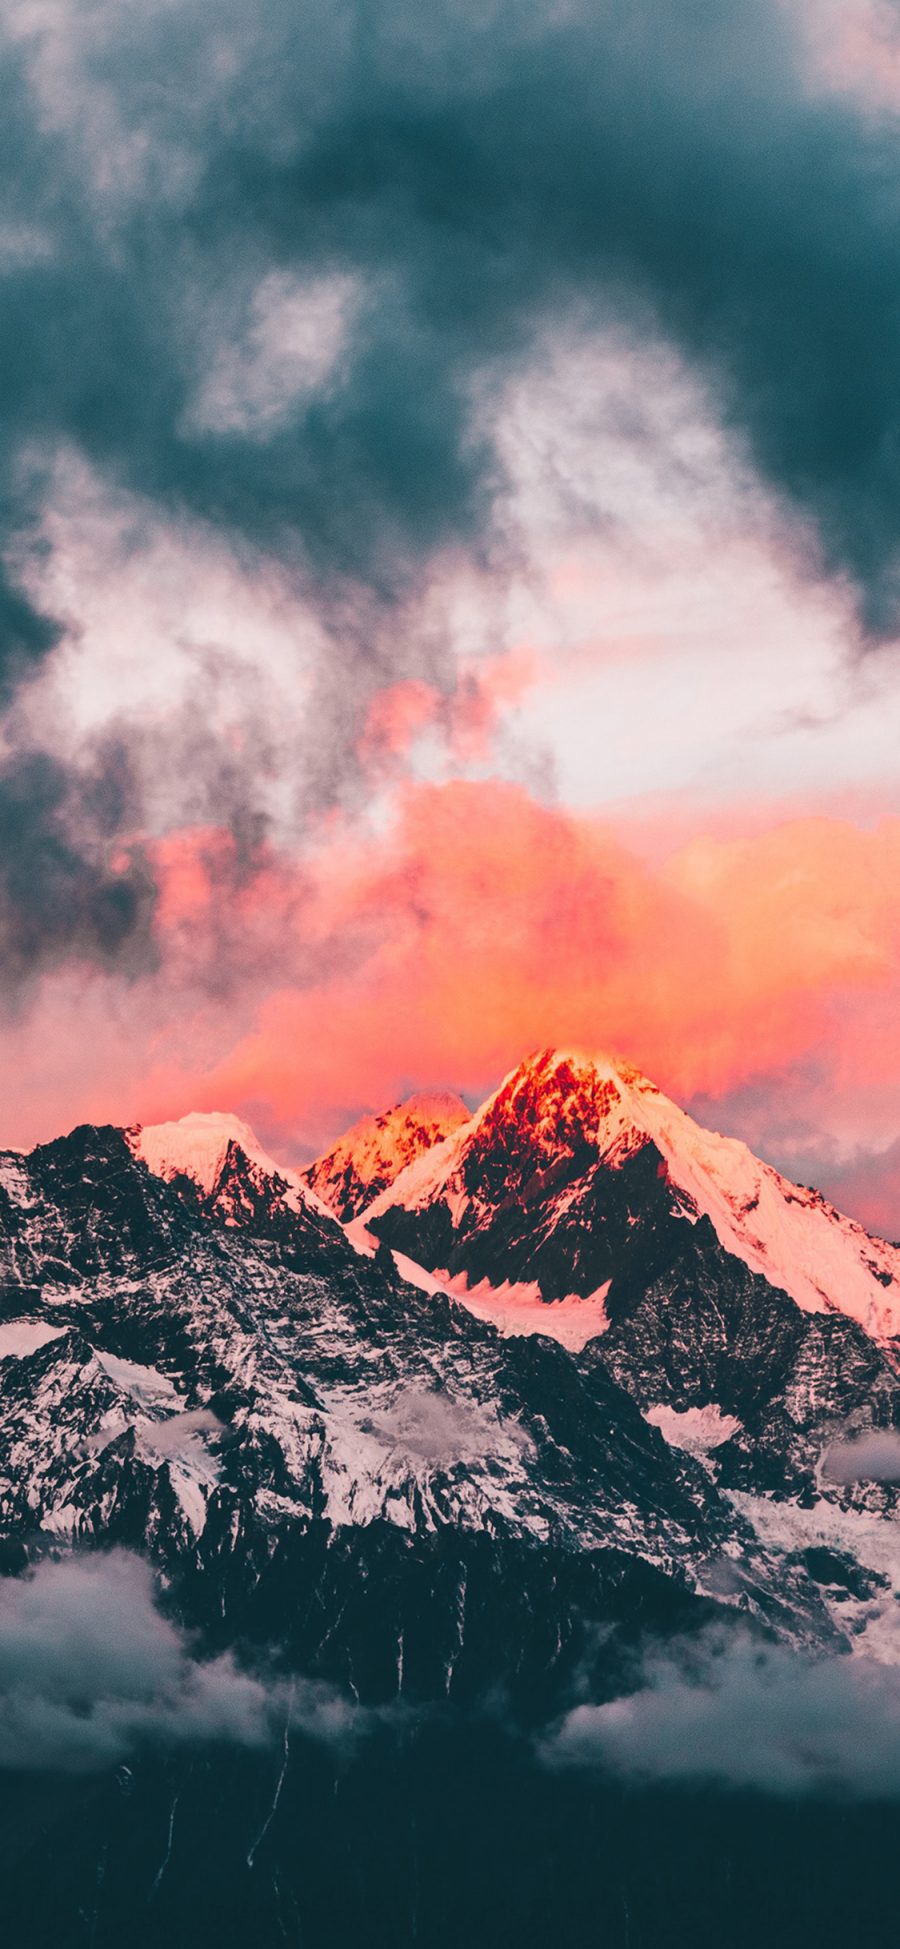 [2436×1125]山顶 雪山 云彩 夕阳 苹果手机壁纸图片